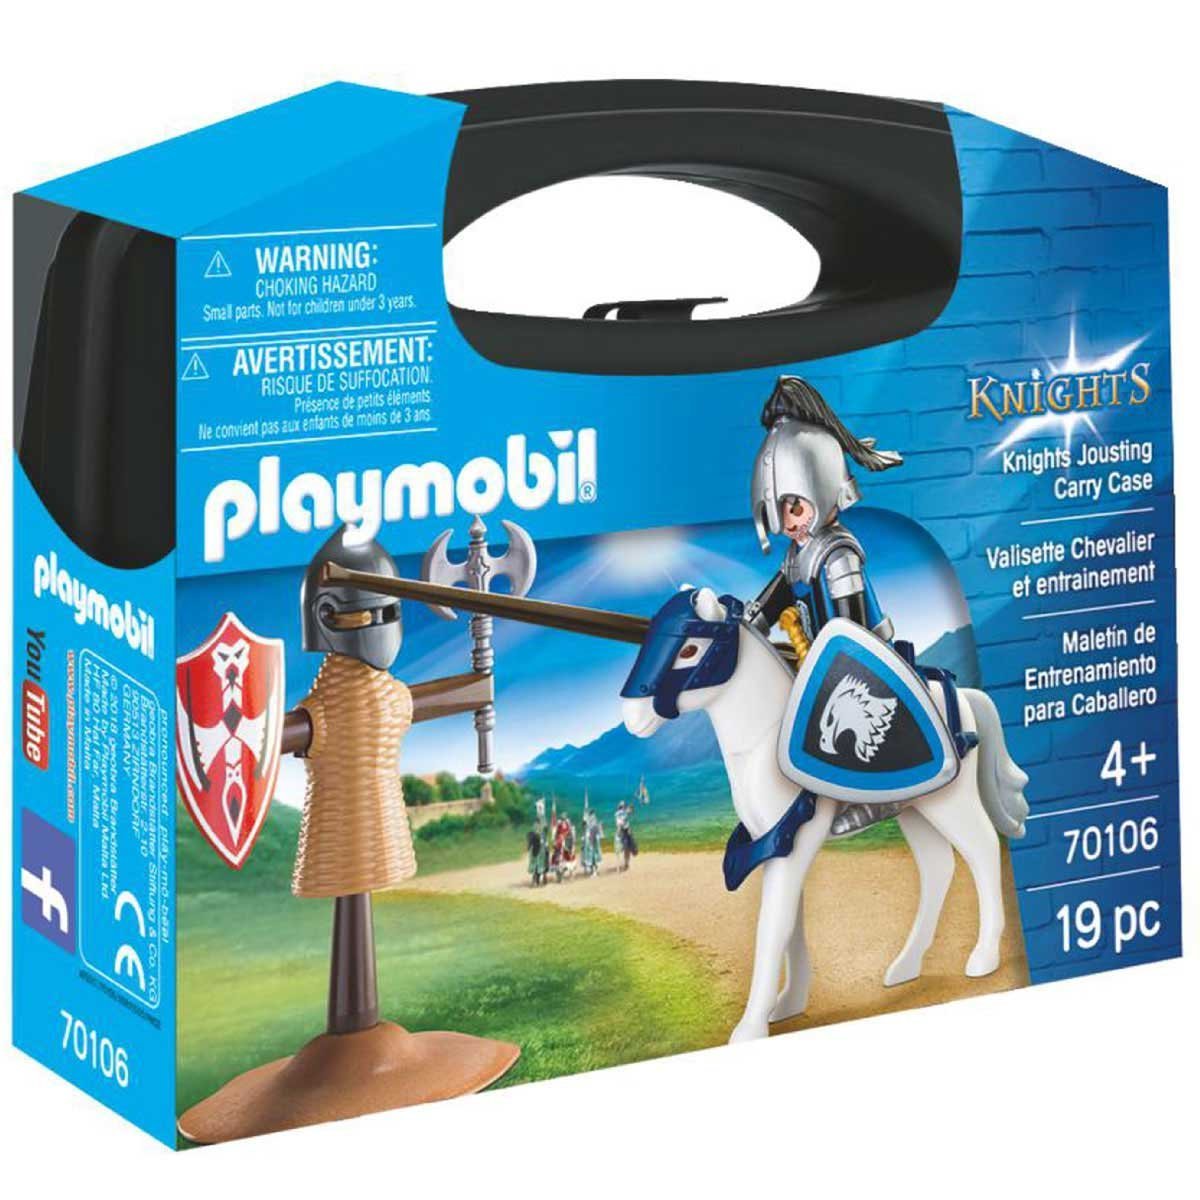 Maletín de Entrenamiento para Caballo Playmobil